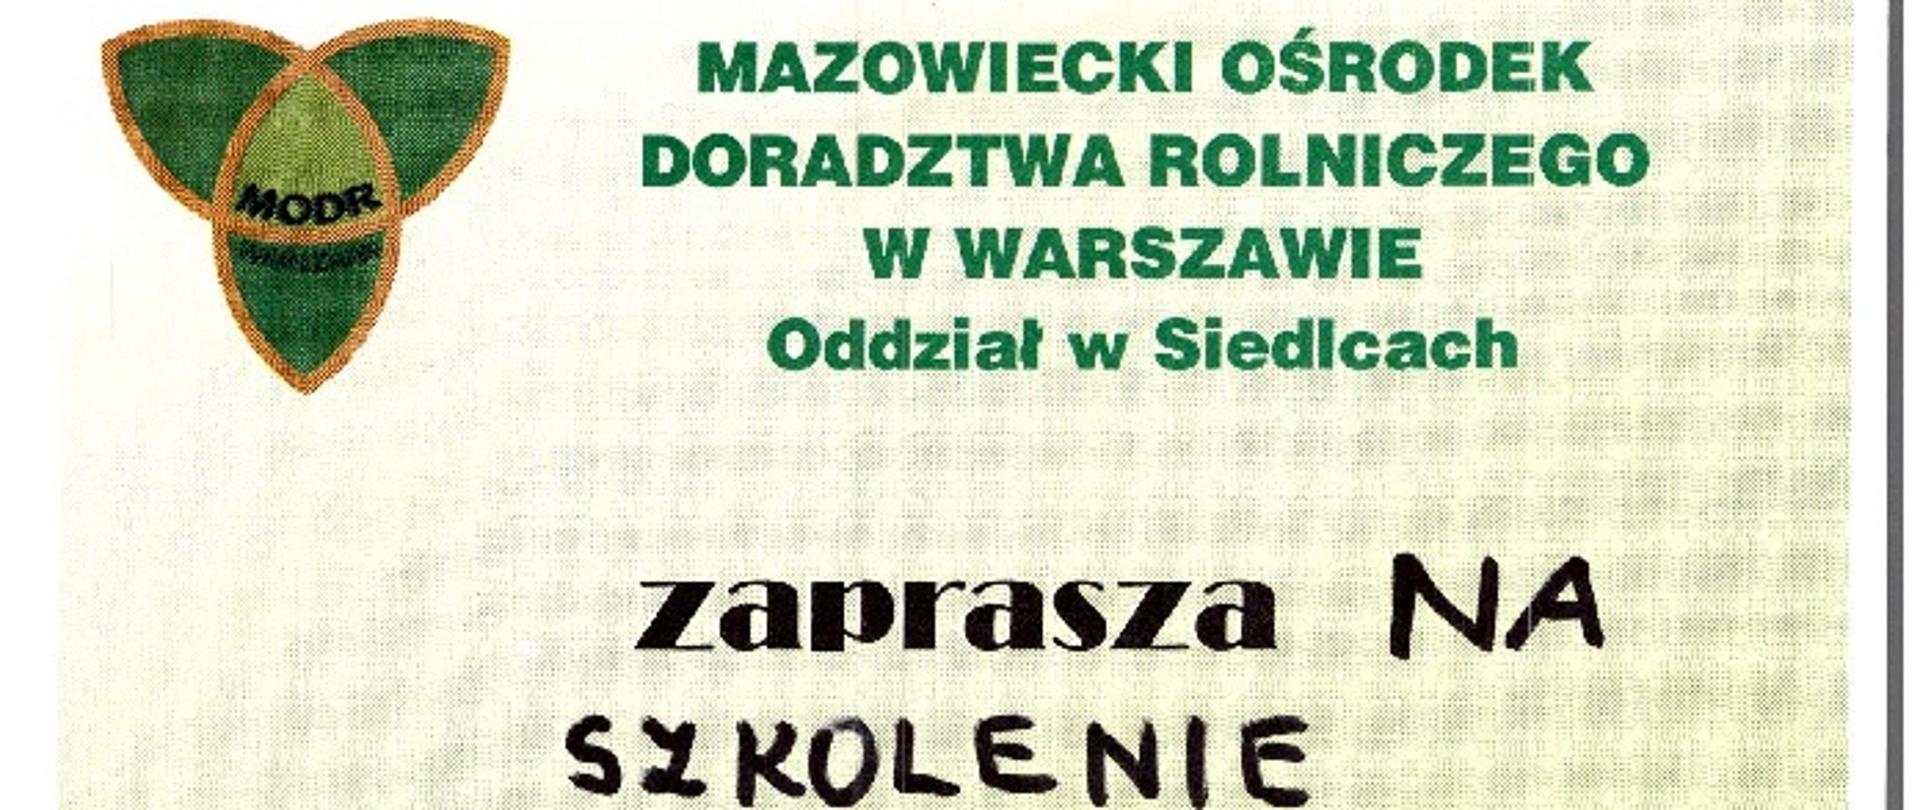 Mazowiecki Ośrodek Doradztwa Rolniczego w Warszawie Oddział w Siedlcach zaprasza na szkolenie "Ograniczenie ryzyka związanego ze stosowaniem środków ochrony roślin" w dniu 29.11.2022 w Urzędzie Gminy Korczew